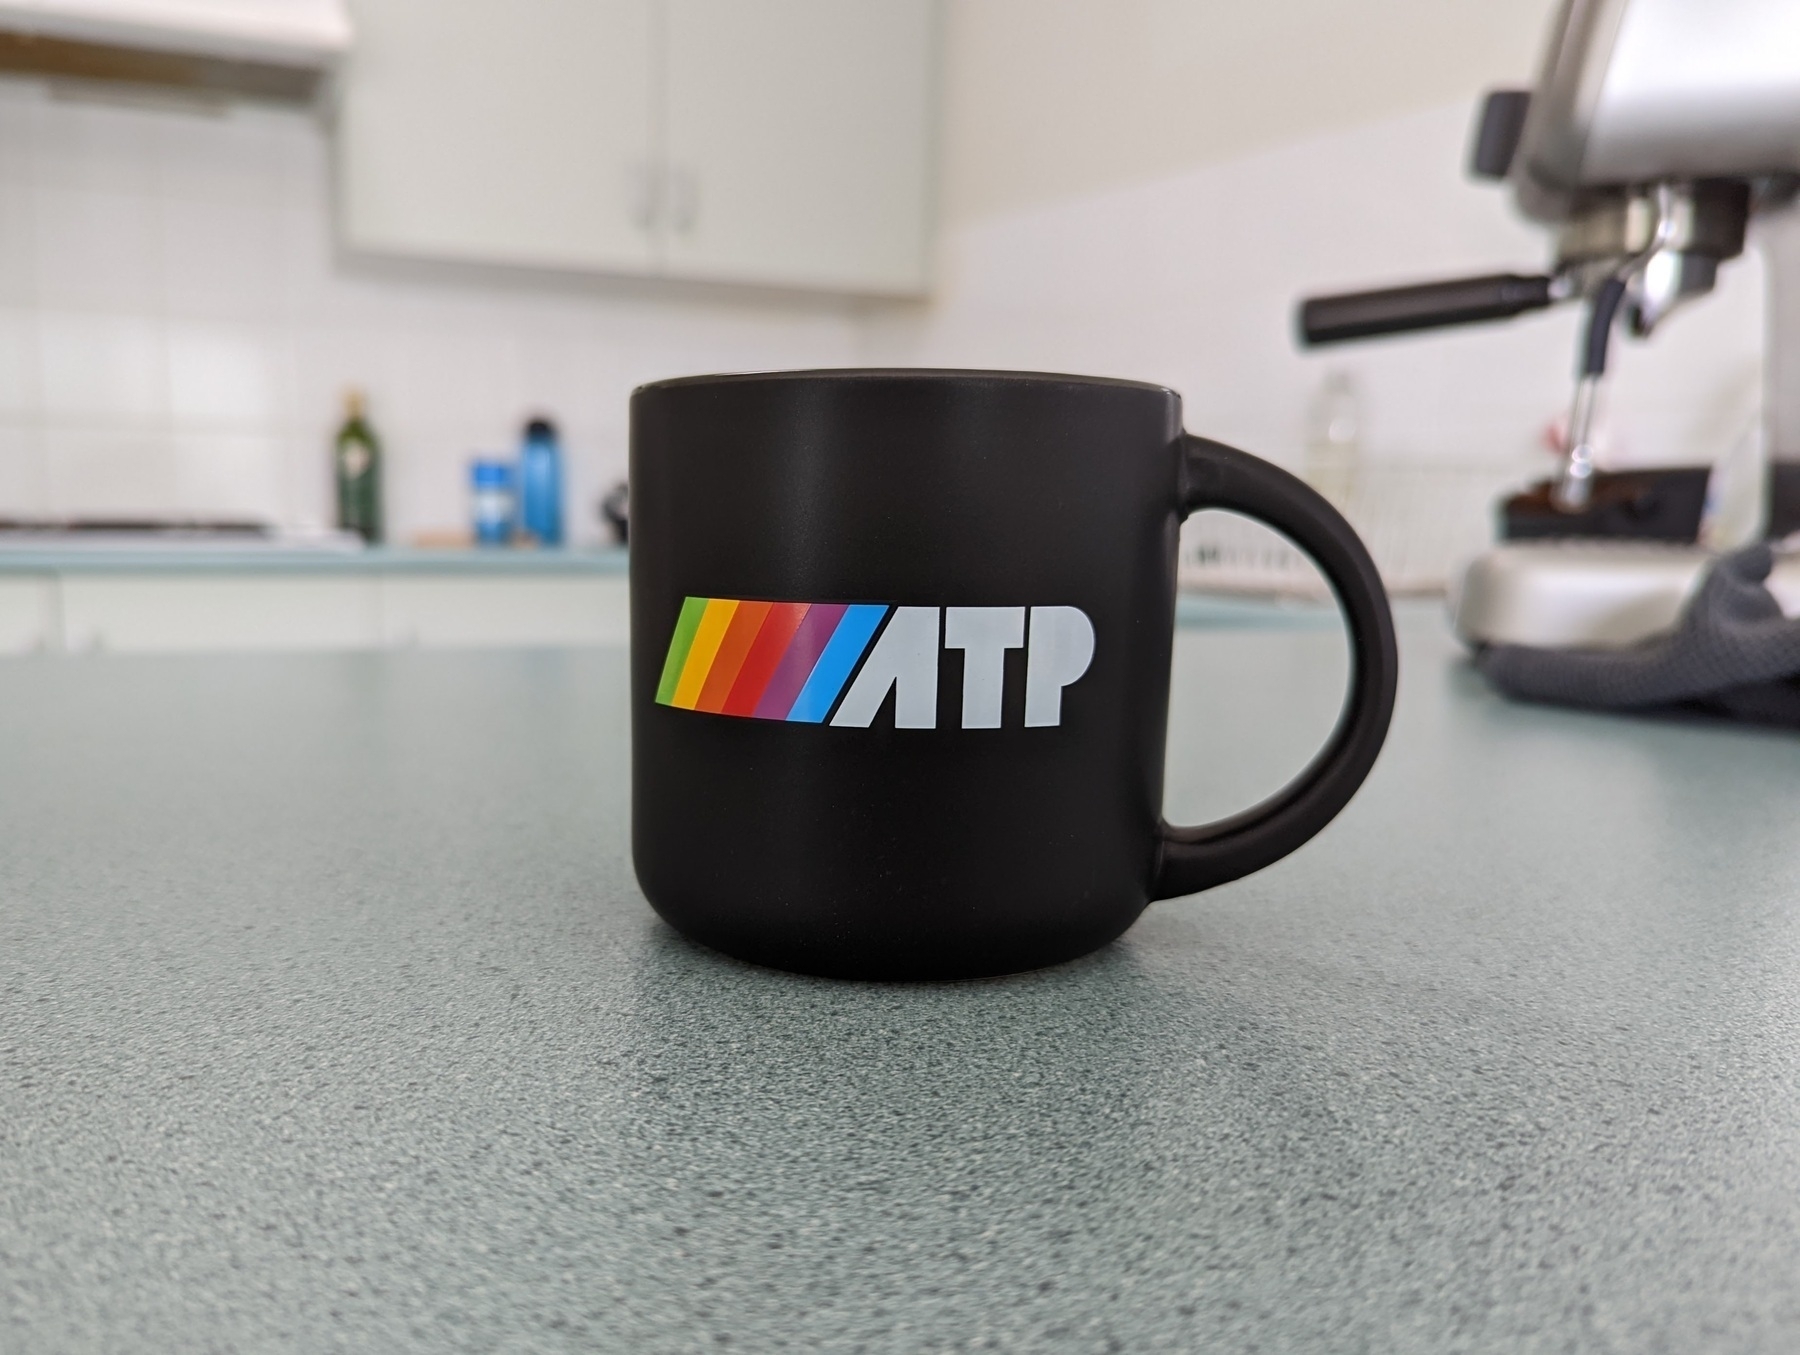 An ATP mug